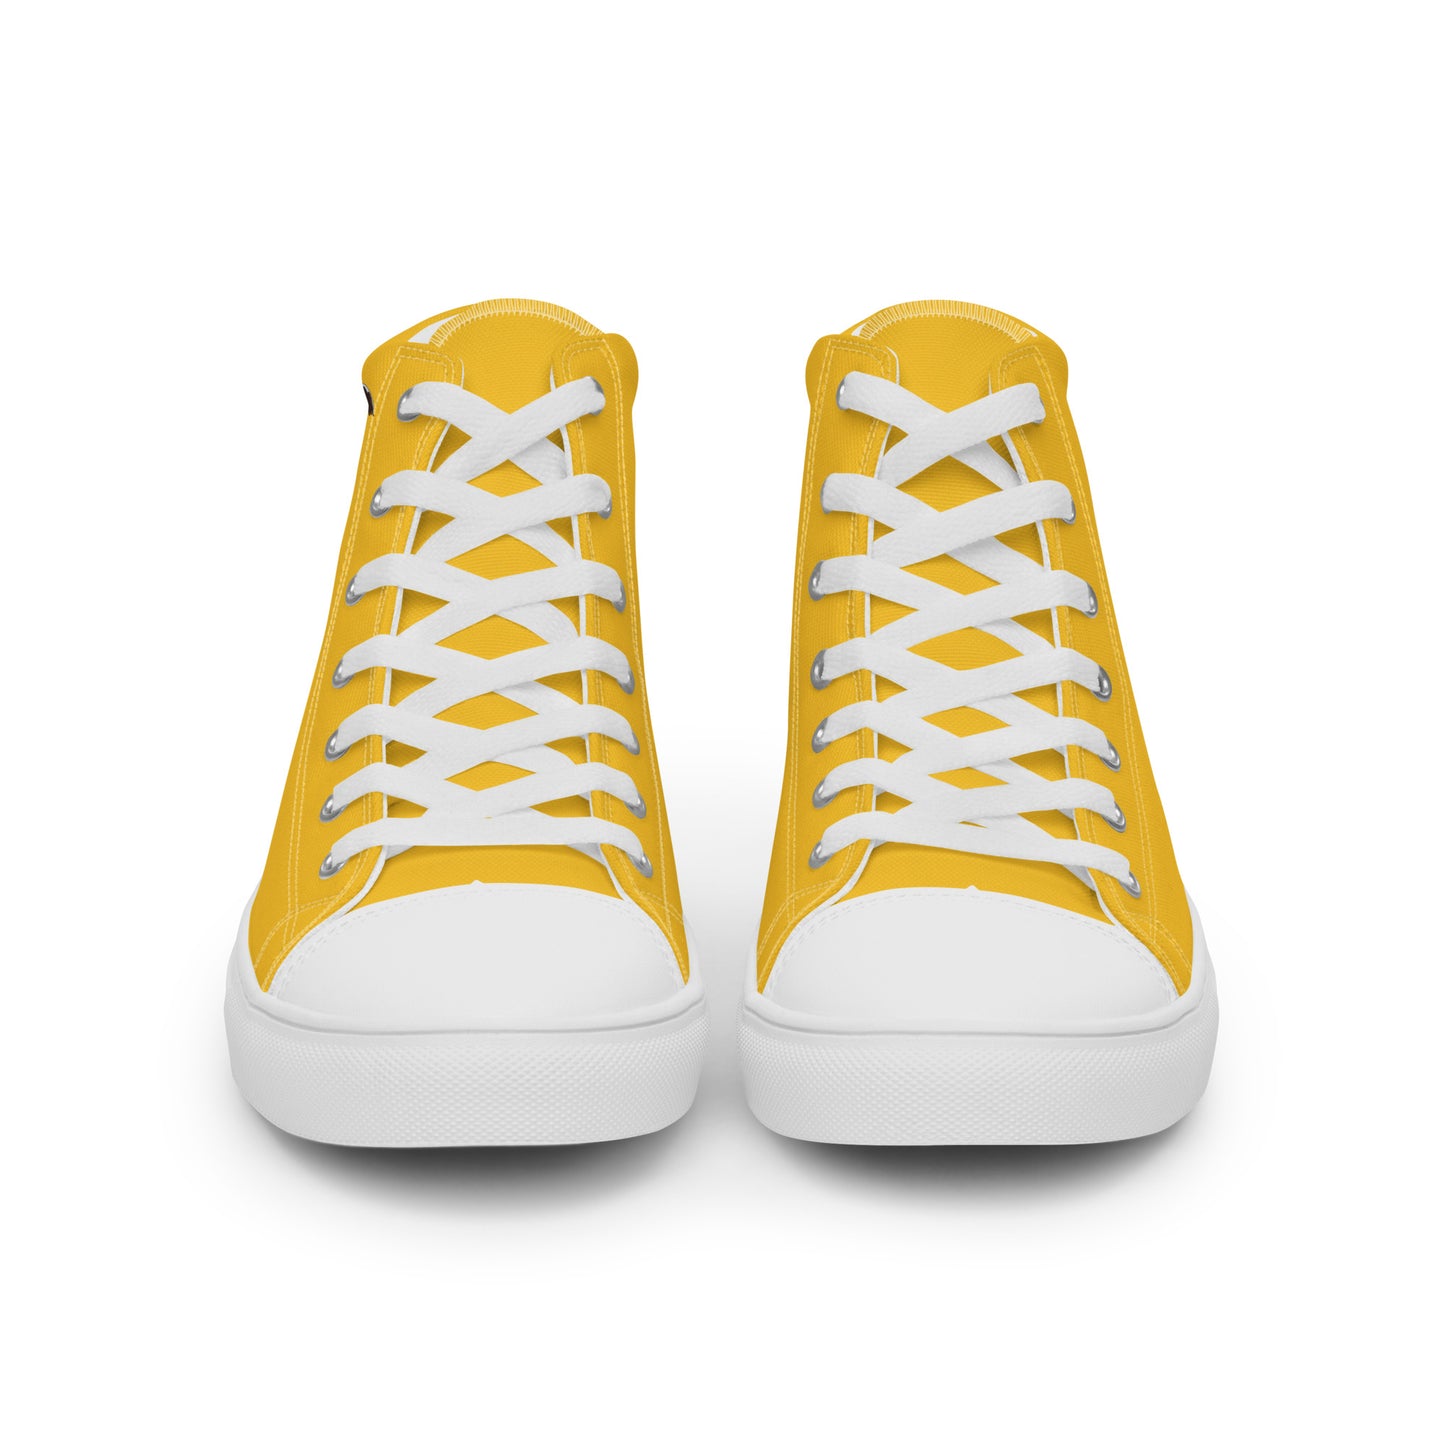 Ecuador - Men - Yellow - High top shoes